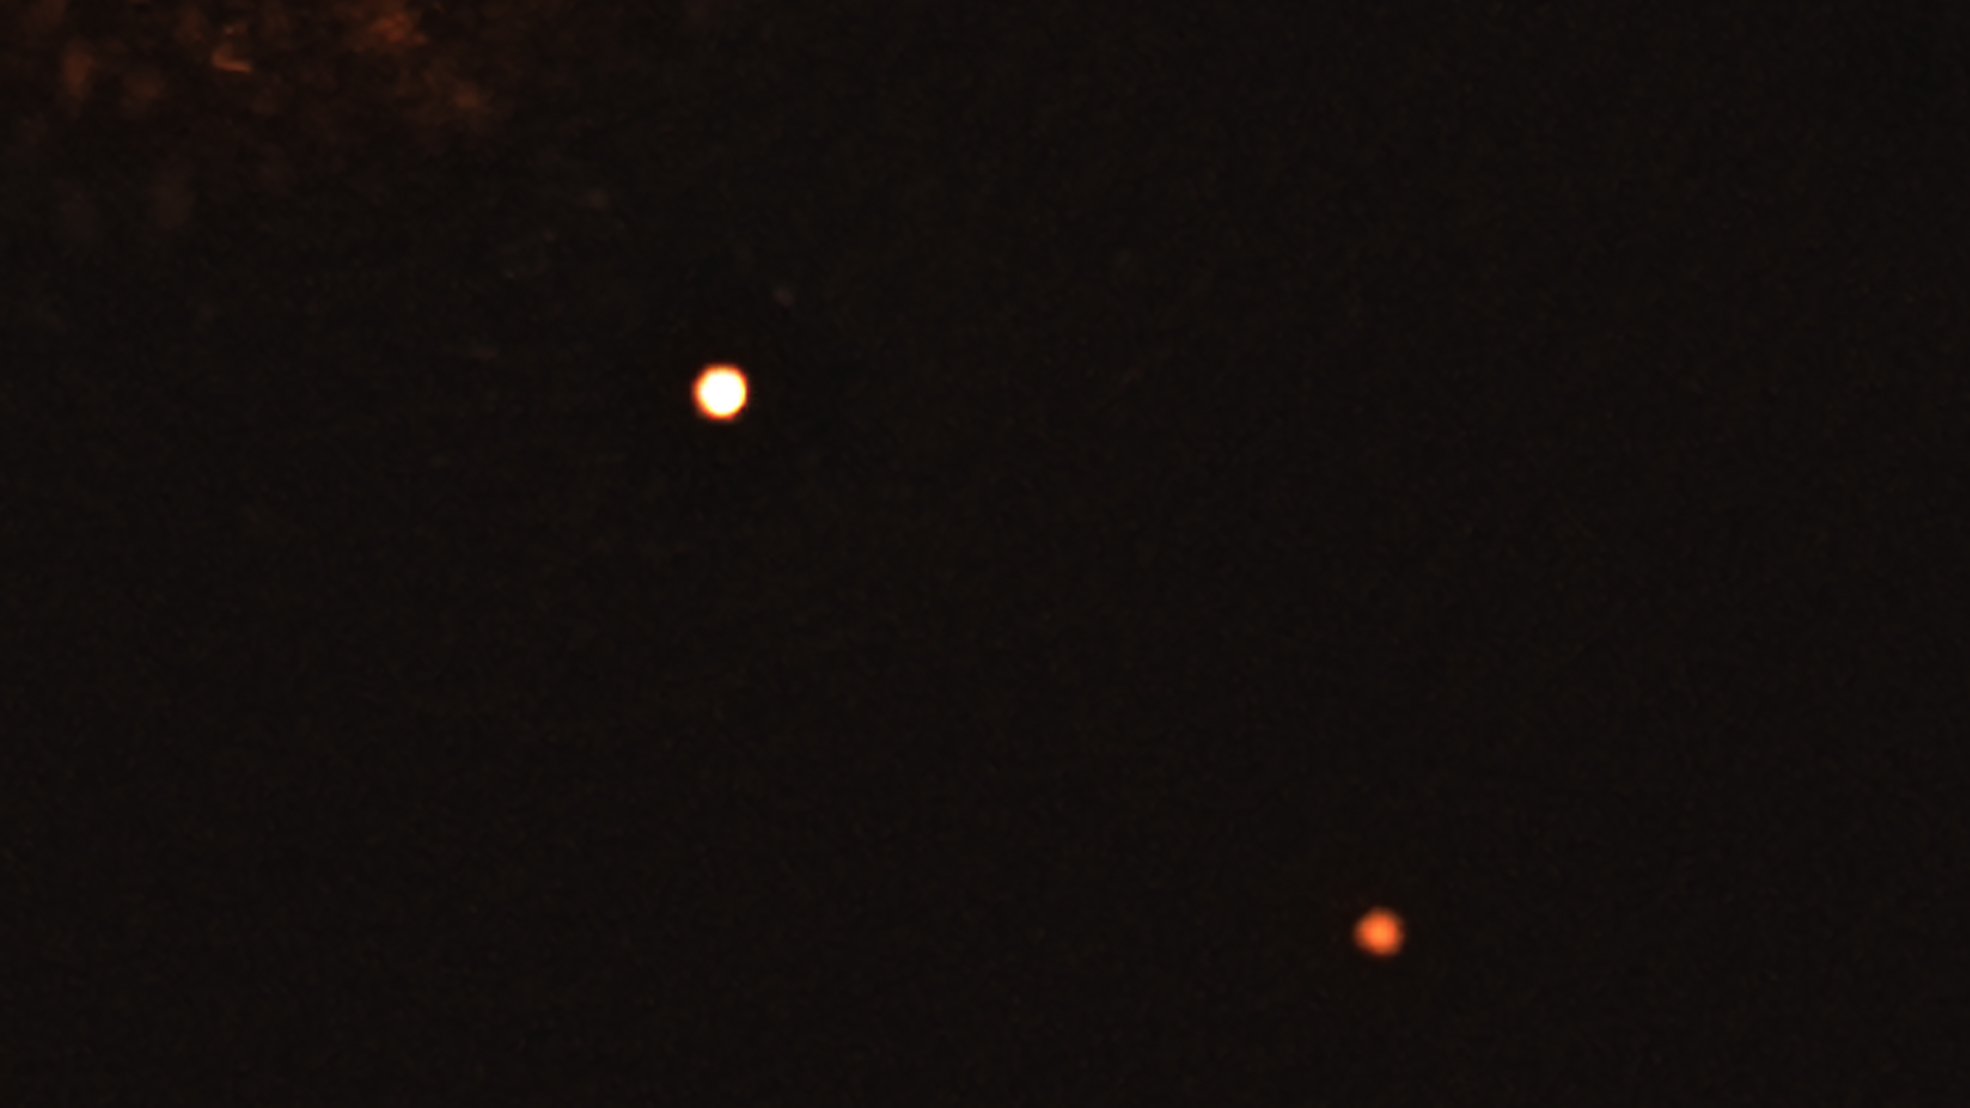 Sur cette image capturée par l’instrument Sphere qui équipe le Very Large Telescope de l’ESO figure l’étoile TYC 8998-760-1 entourée de deux exoplanètes géantes. C’est la toute première fois que les astronomes parviennent à observer directement plus d’une planète en orbite autour d’une étoile semblable au Soleil. © ESO, Bohn et al.